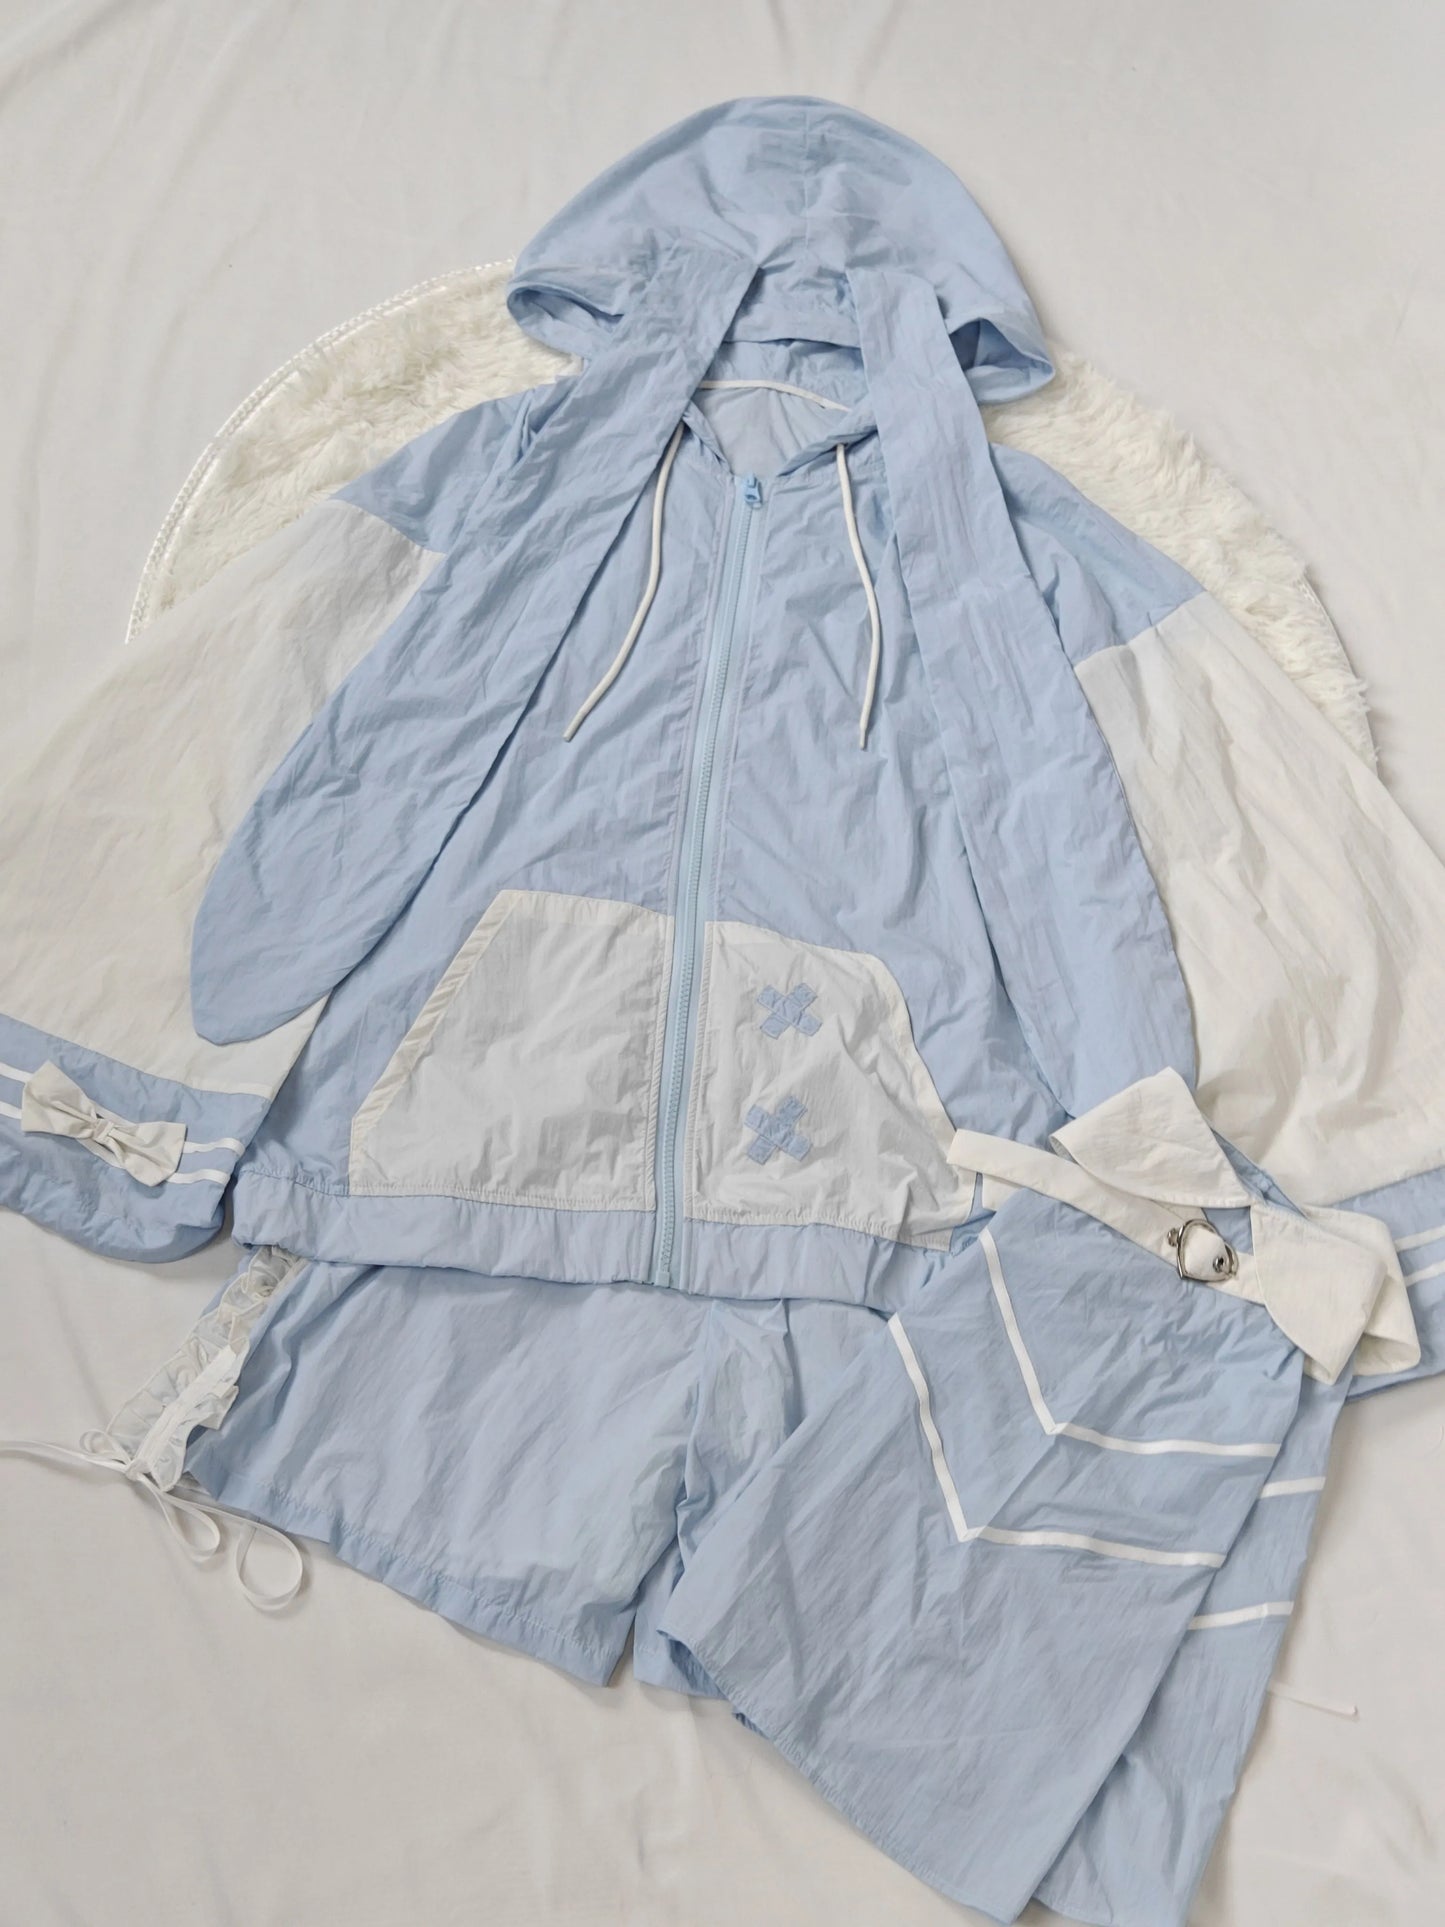 Tenshi Kaiwai Sun Protection Suit Angel Subculture Coat Set (L S) 37578:575886